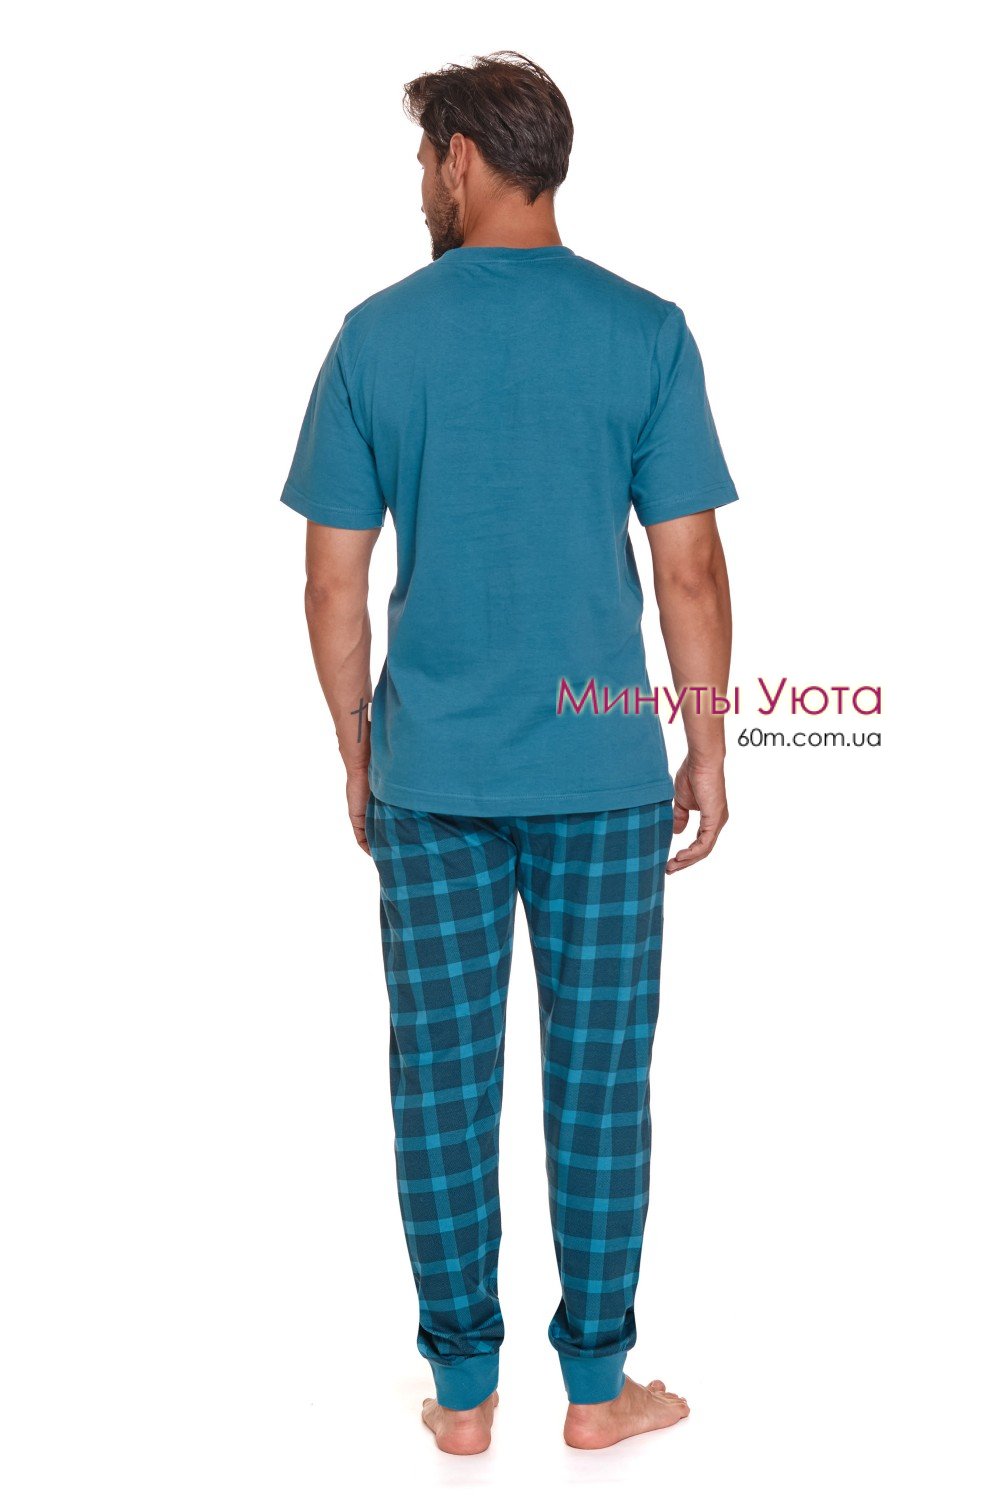 Мужская пижама из натуральной хлопковой ткани голубого цвета с брюками в клетку 